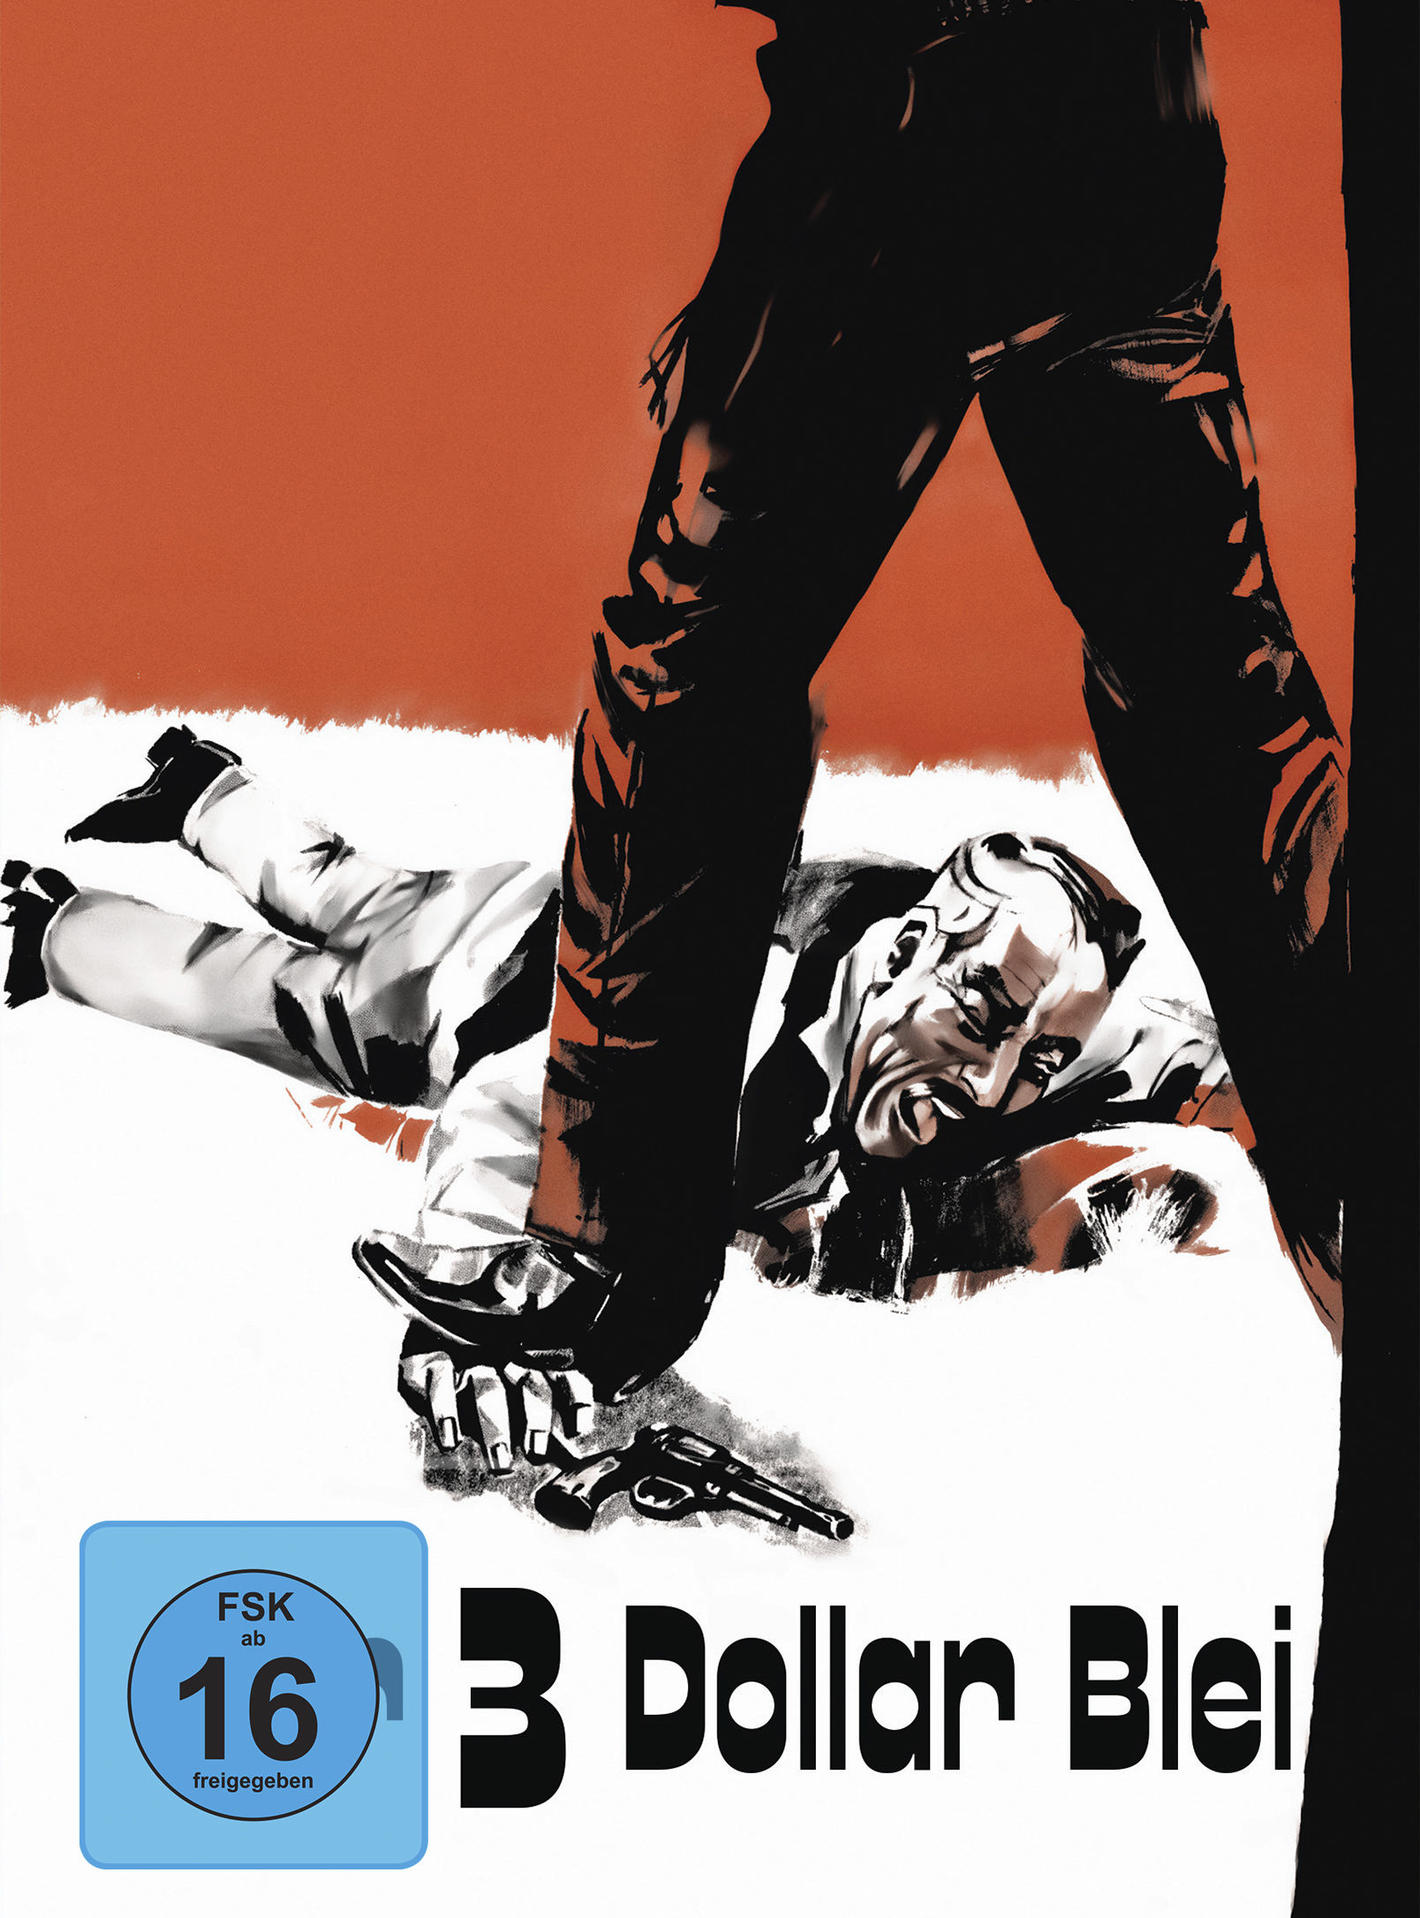 Blei-Limitiertes Dollar DVD Mediabook Cover Für Blu-ray + drei C